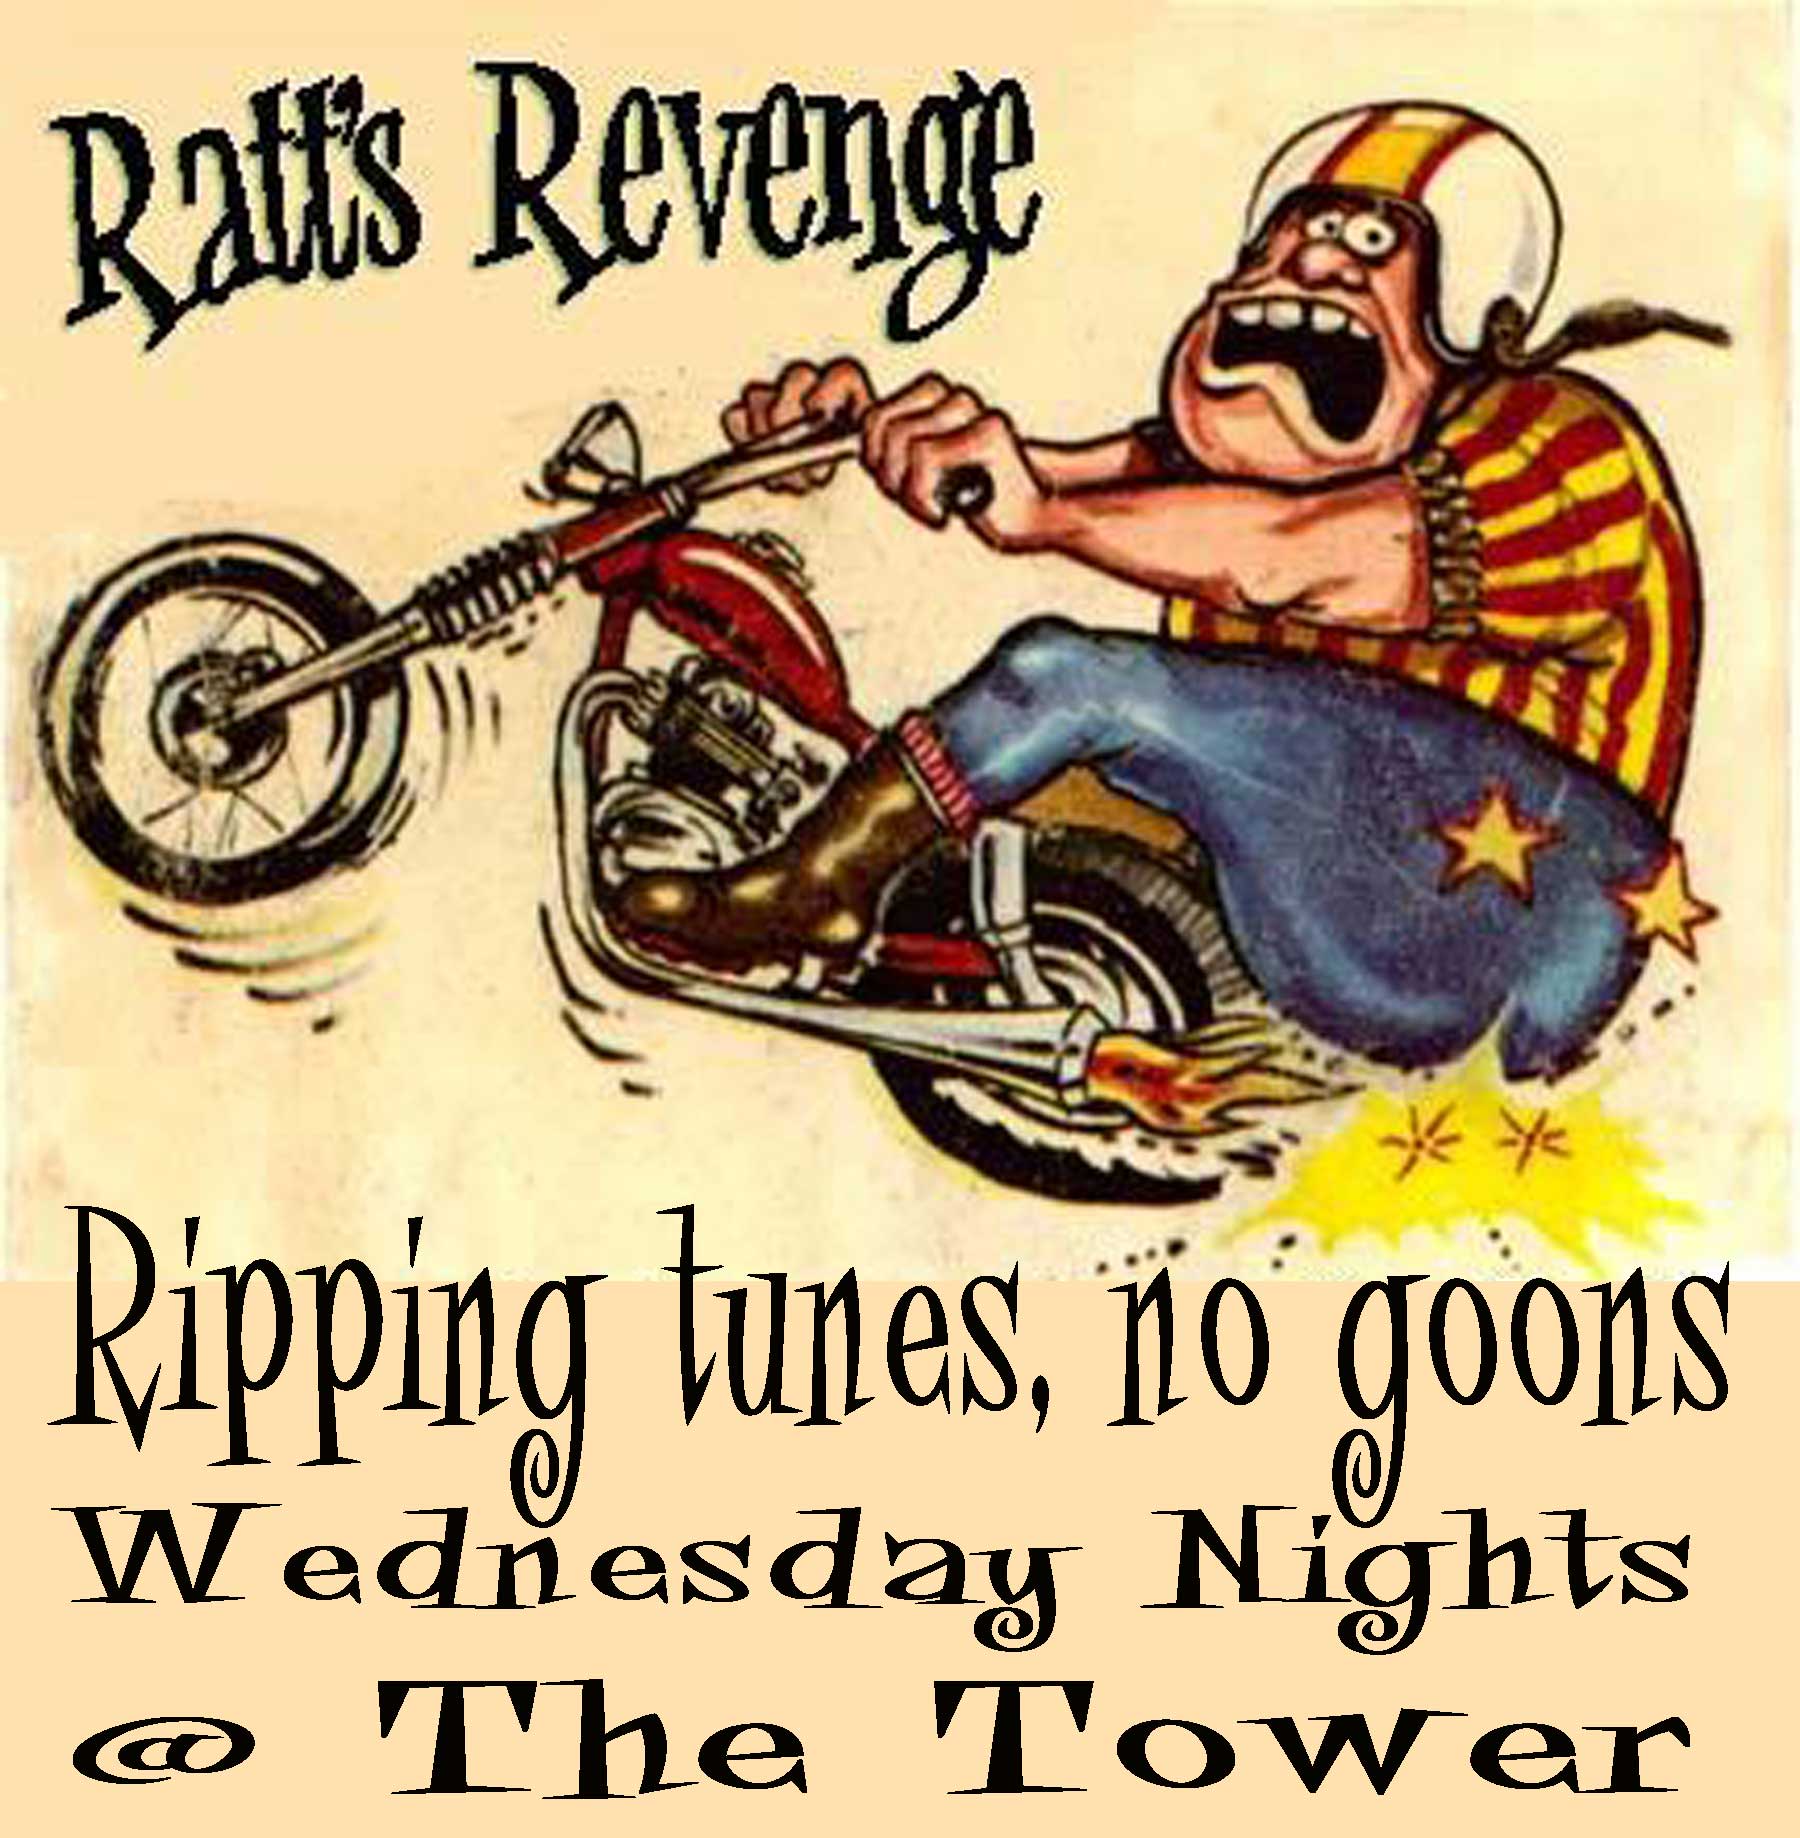 The Ratts Revenge